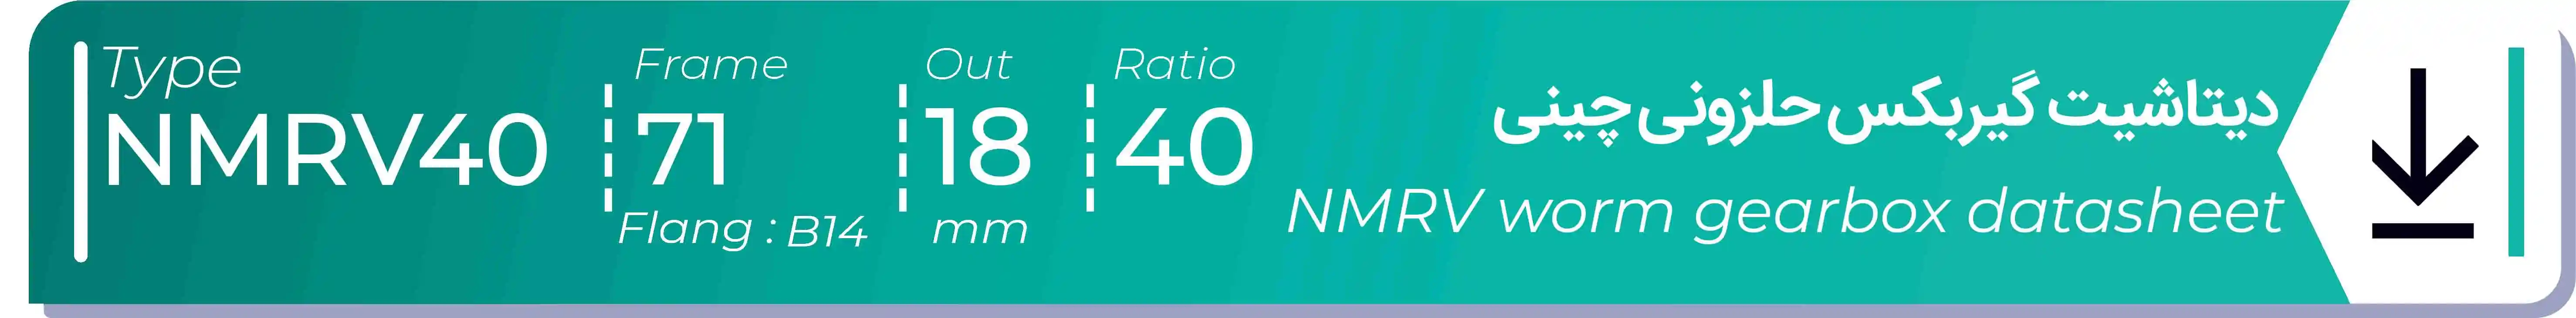  دیتاشیت و مشخصات فنی گیربکس حلزونی چینی   NMRV40  -  با خروجی 18- میلی متر و نسبت40 و فریم 71